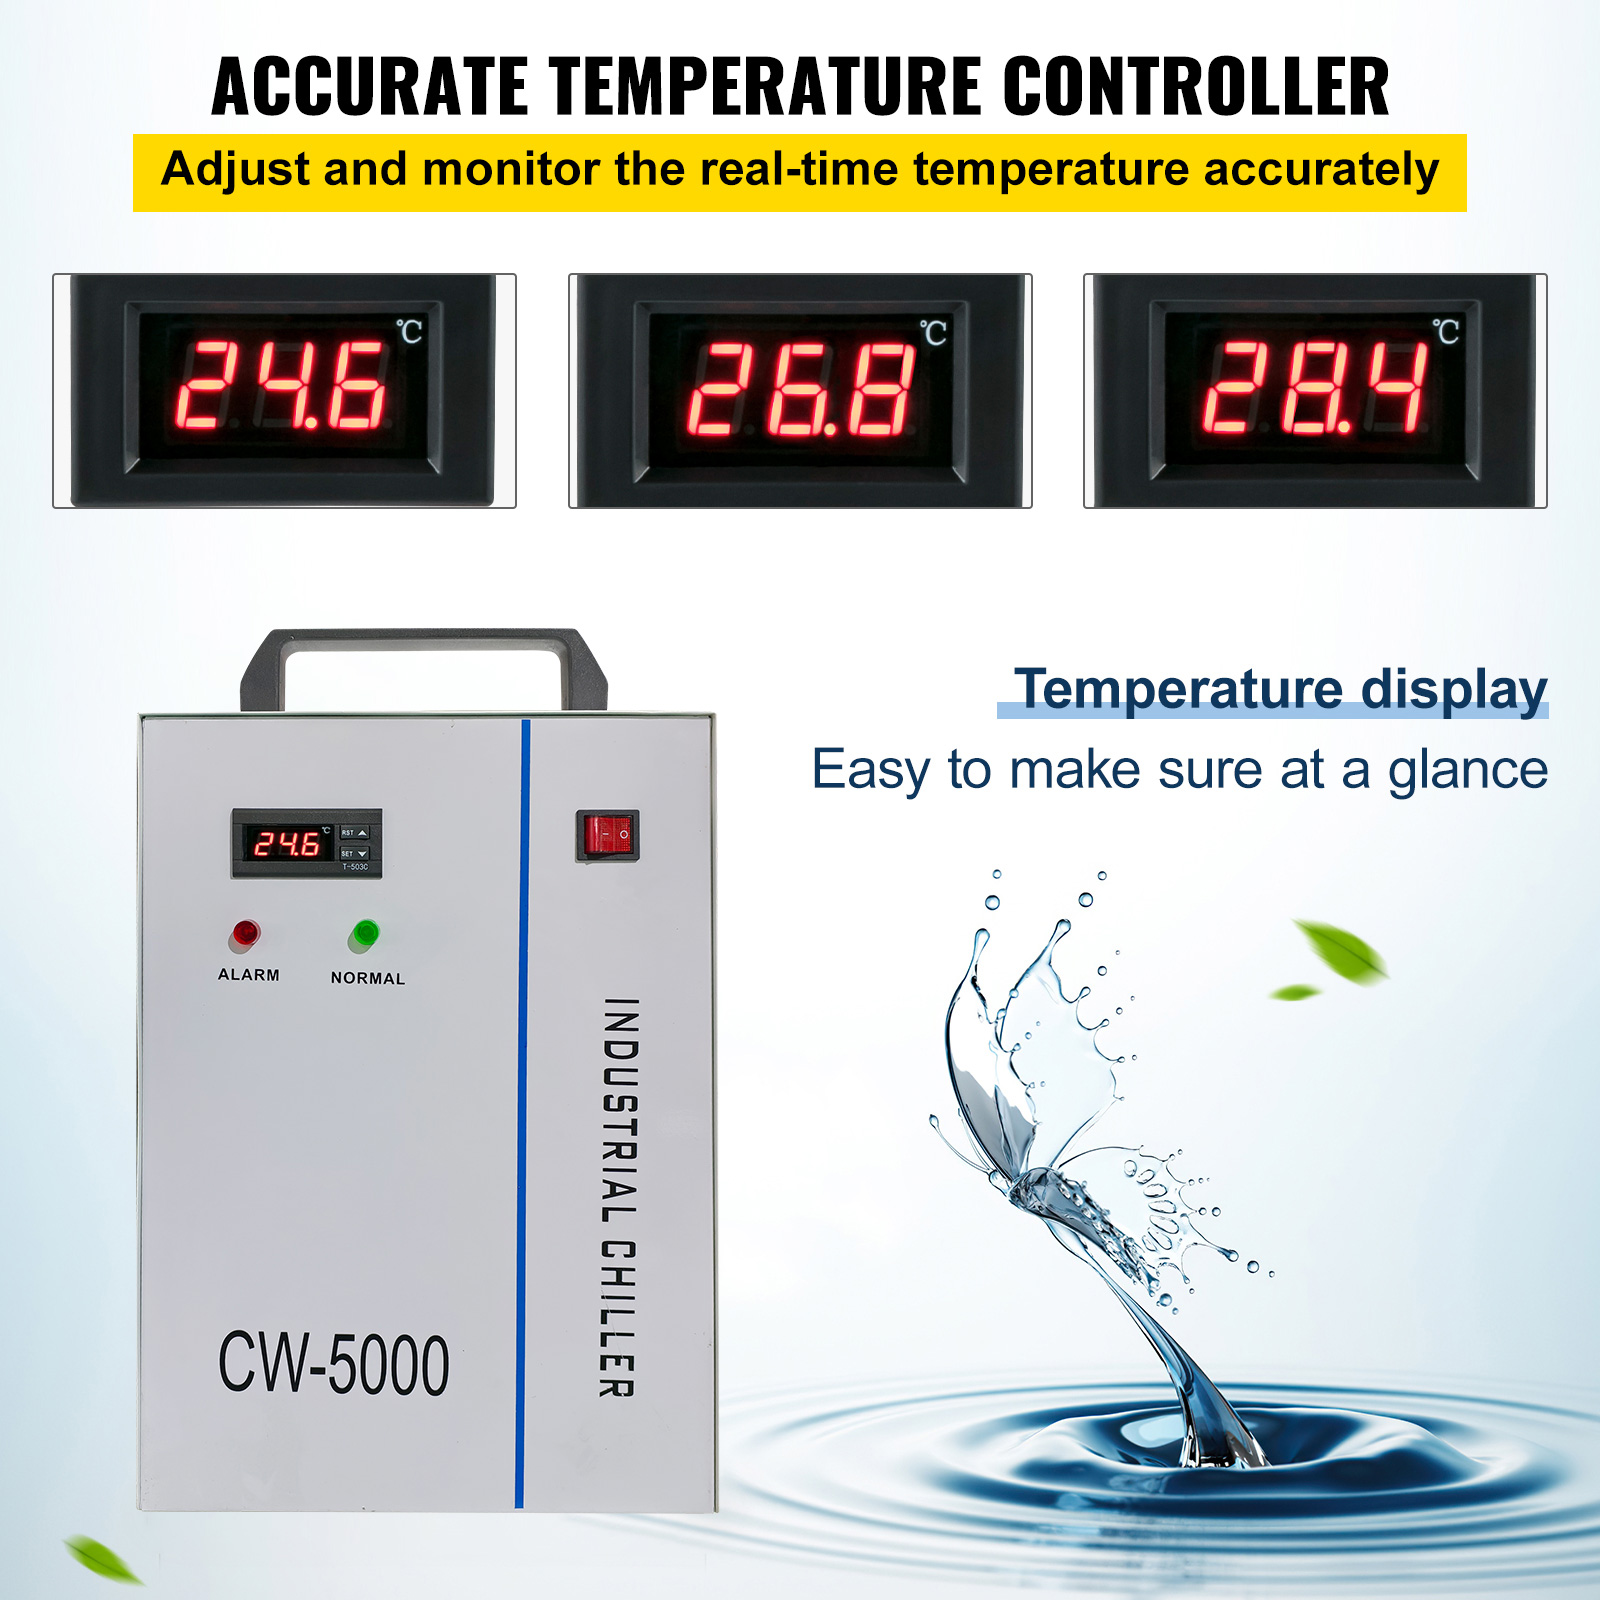 VEVOR Industrial Water Chiller CW5200/5000/3000 CO2 Laser Tube Laser  Engraver